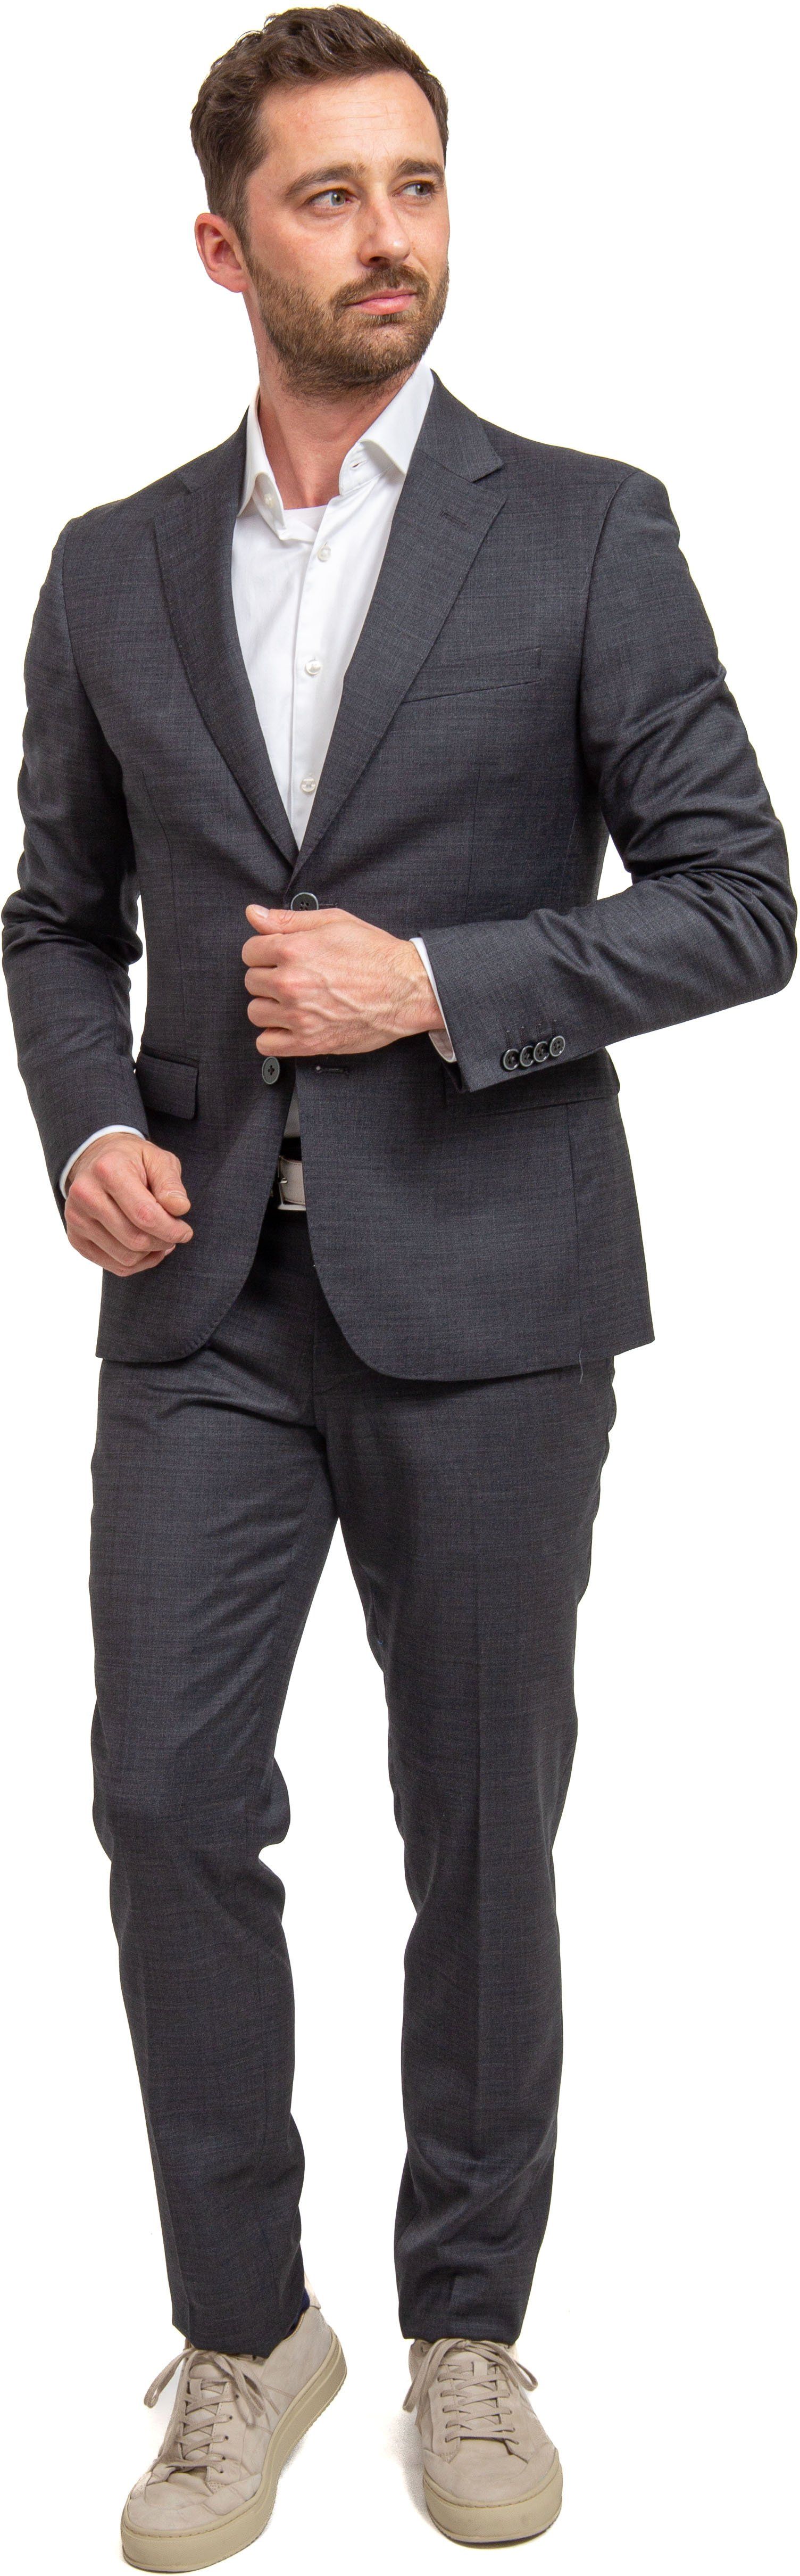 Suitable Suit Toulon Check Grey Brown size 38-R